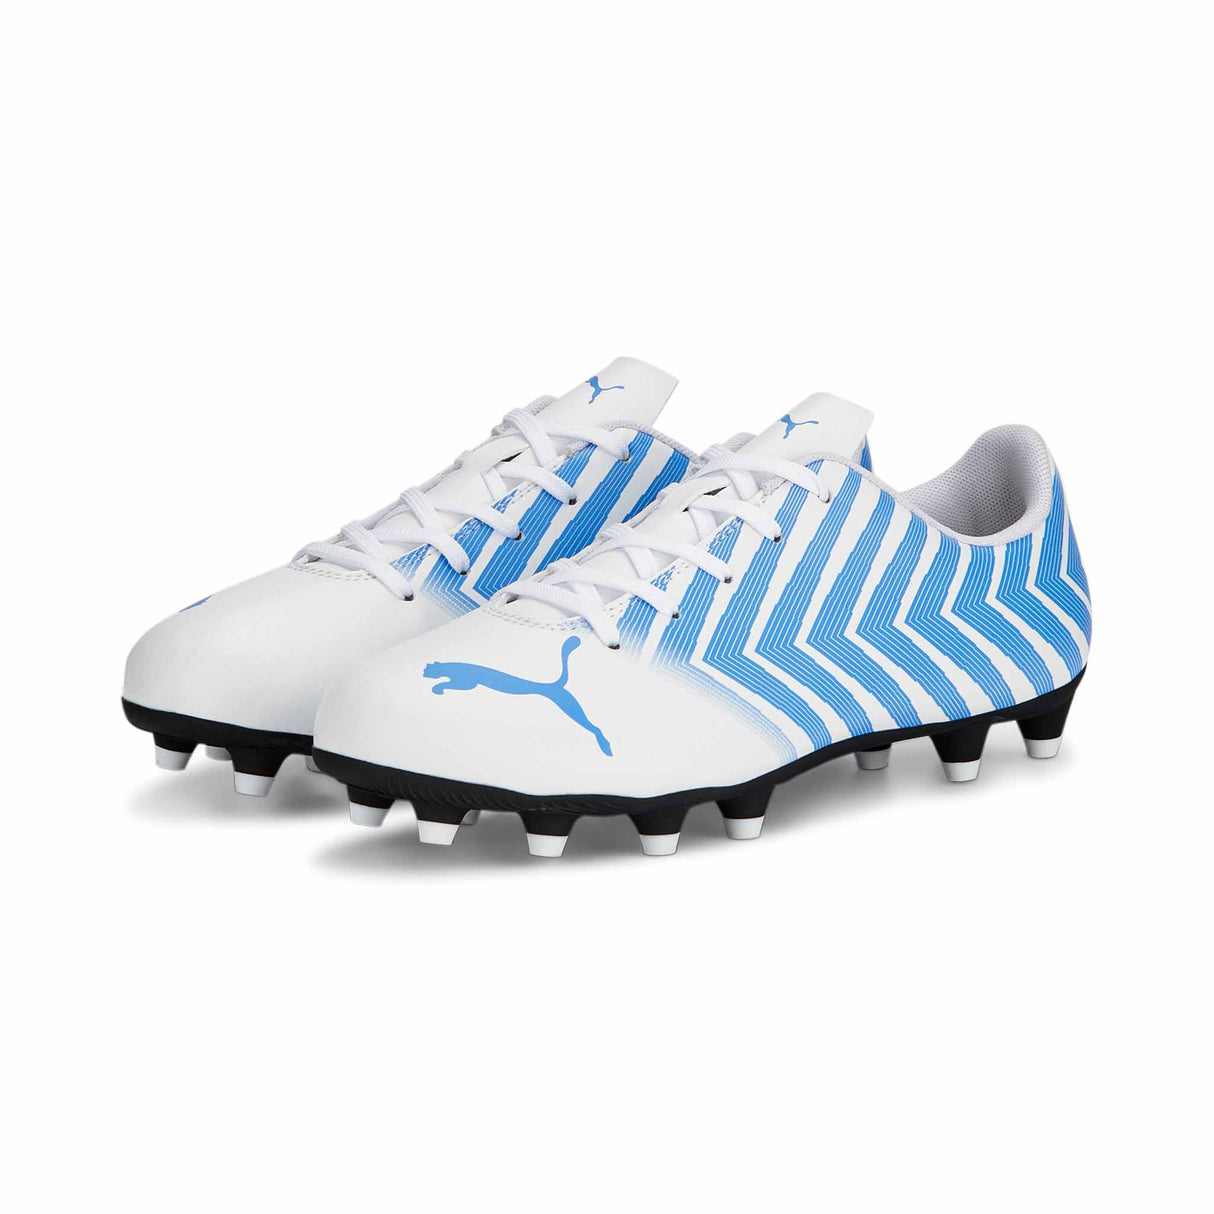 Puma Tacto II FG/AG Junior chaussure de soccer enfant - Blanc / Bleu